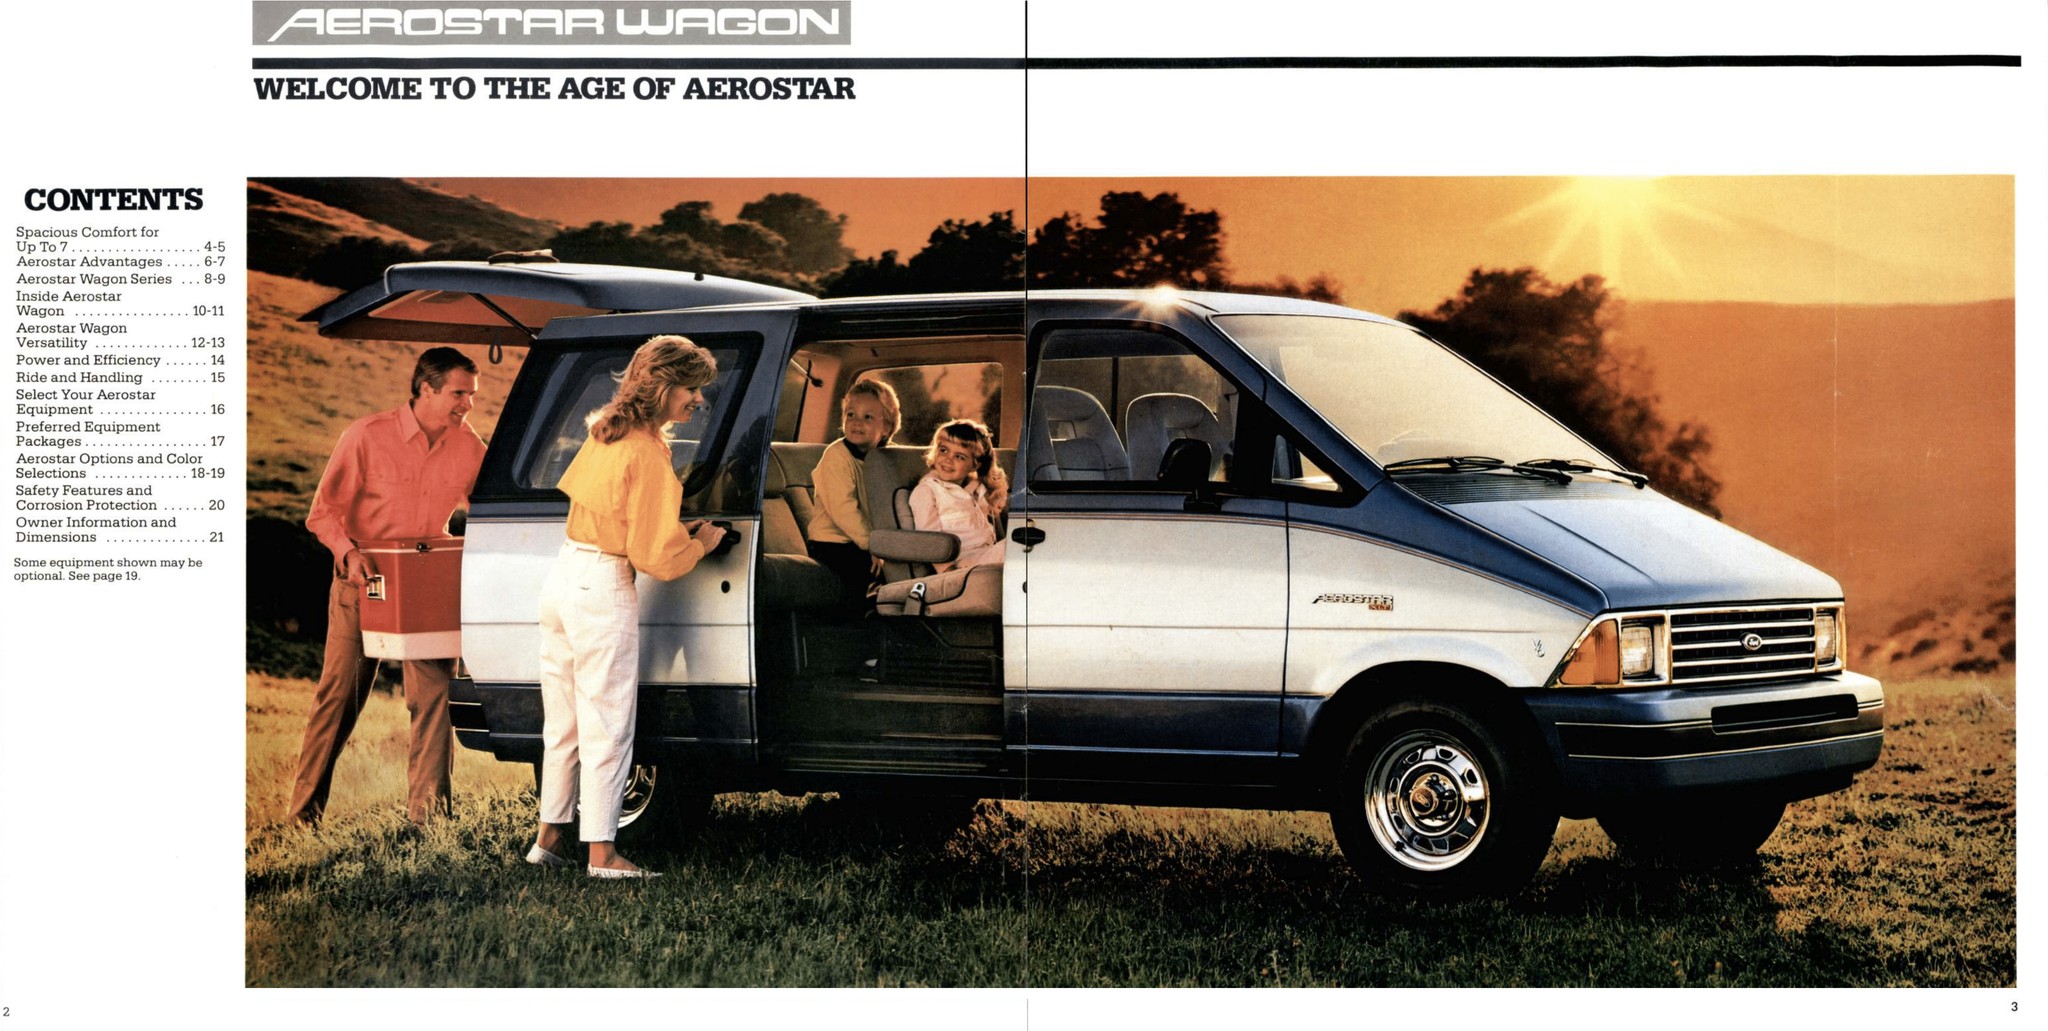 1986 Ford Aerostar Wagon Brochure 02-03